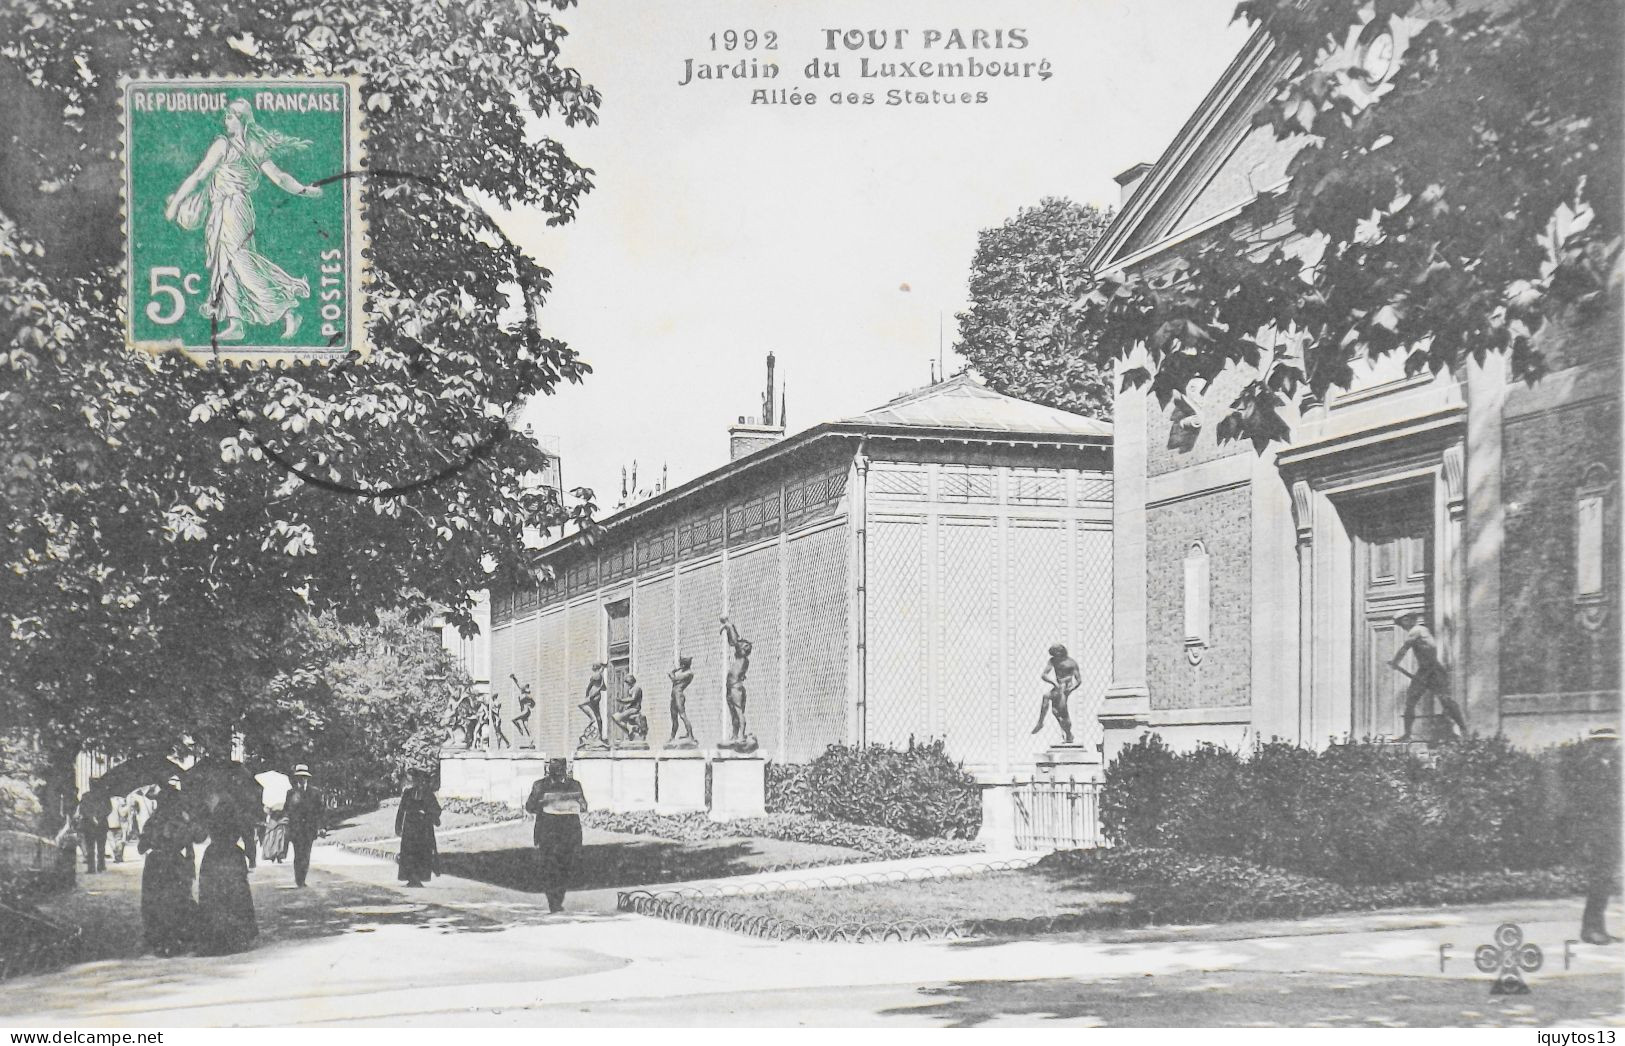 CPA. [75] > TOUT PARIS > N° 1992 - Jardin Du Luxembourg, Allée Des Statues - (VIe Arrt.) - 1911 - Coll. F. Fleury - TBE - District 06